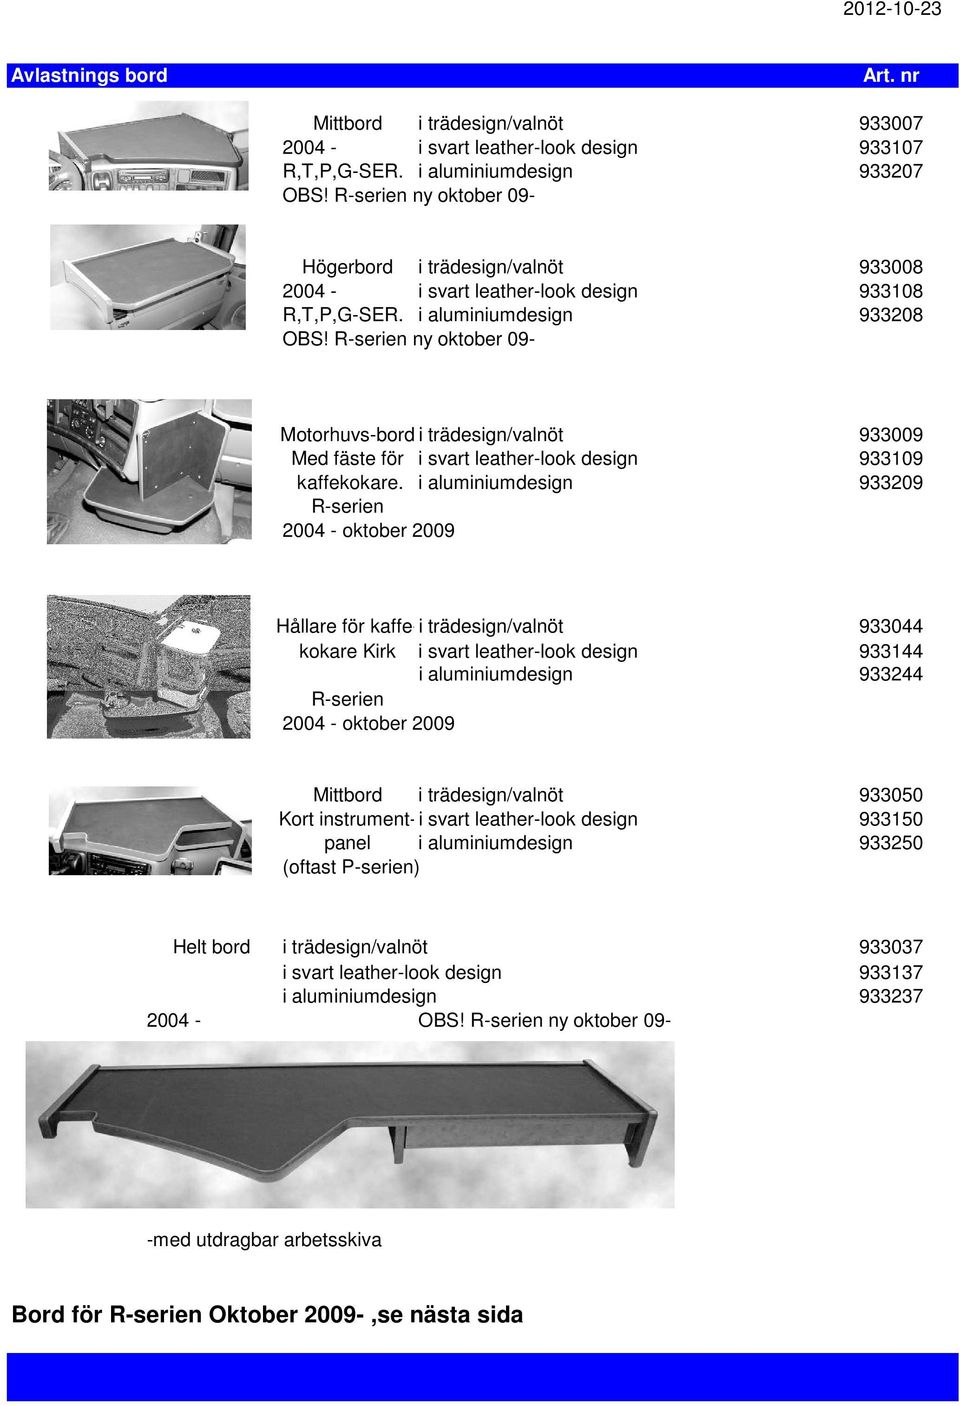 R-serien ny oktober 09- Motorhuvs-bord i trädesign/valnöt 933009 Med fäste för i svart leather-look design 933109 kaffekokare.